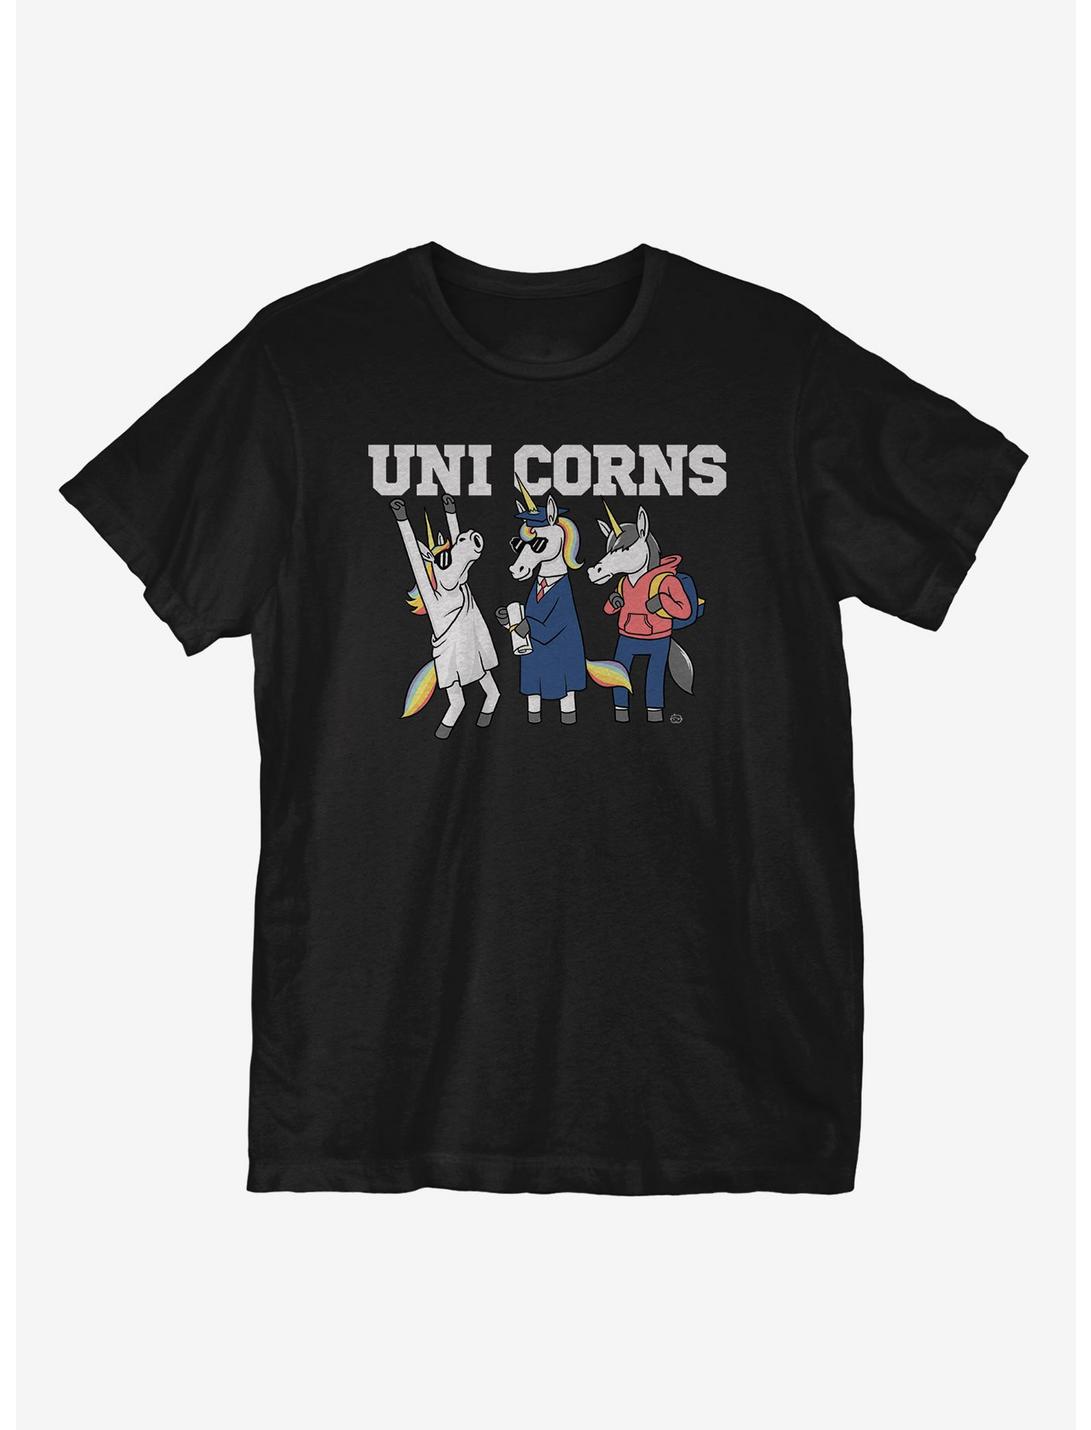 Uni Corns T-Shirt, BLACK, hi-res